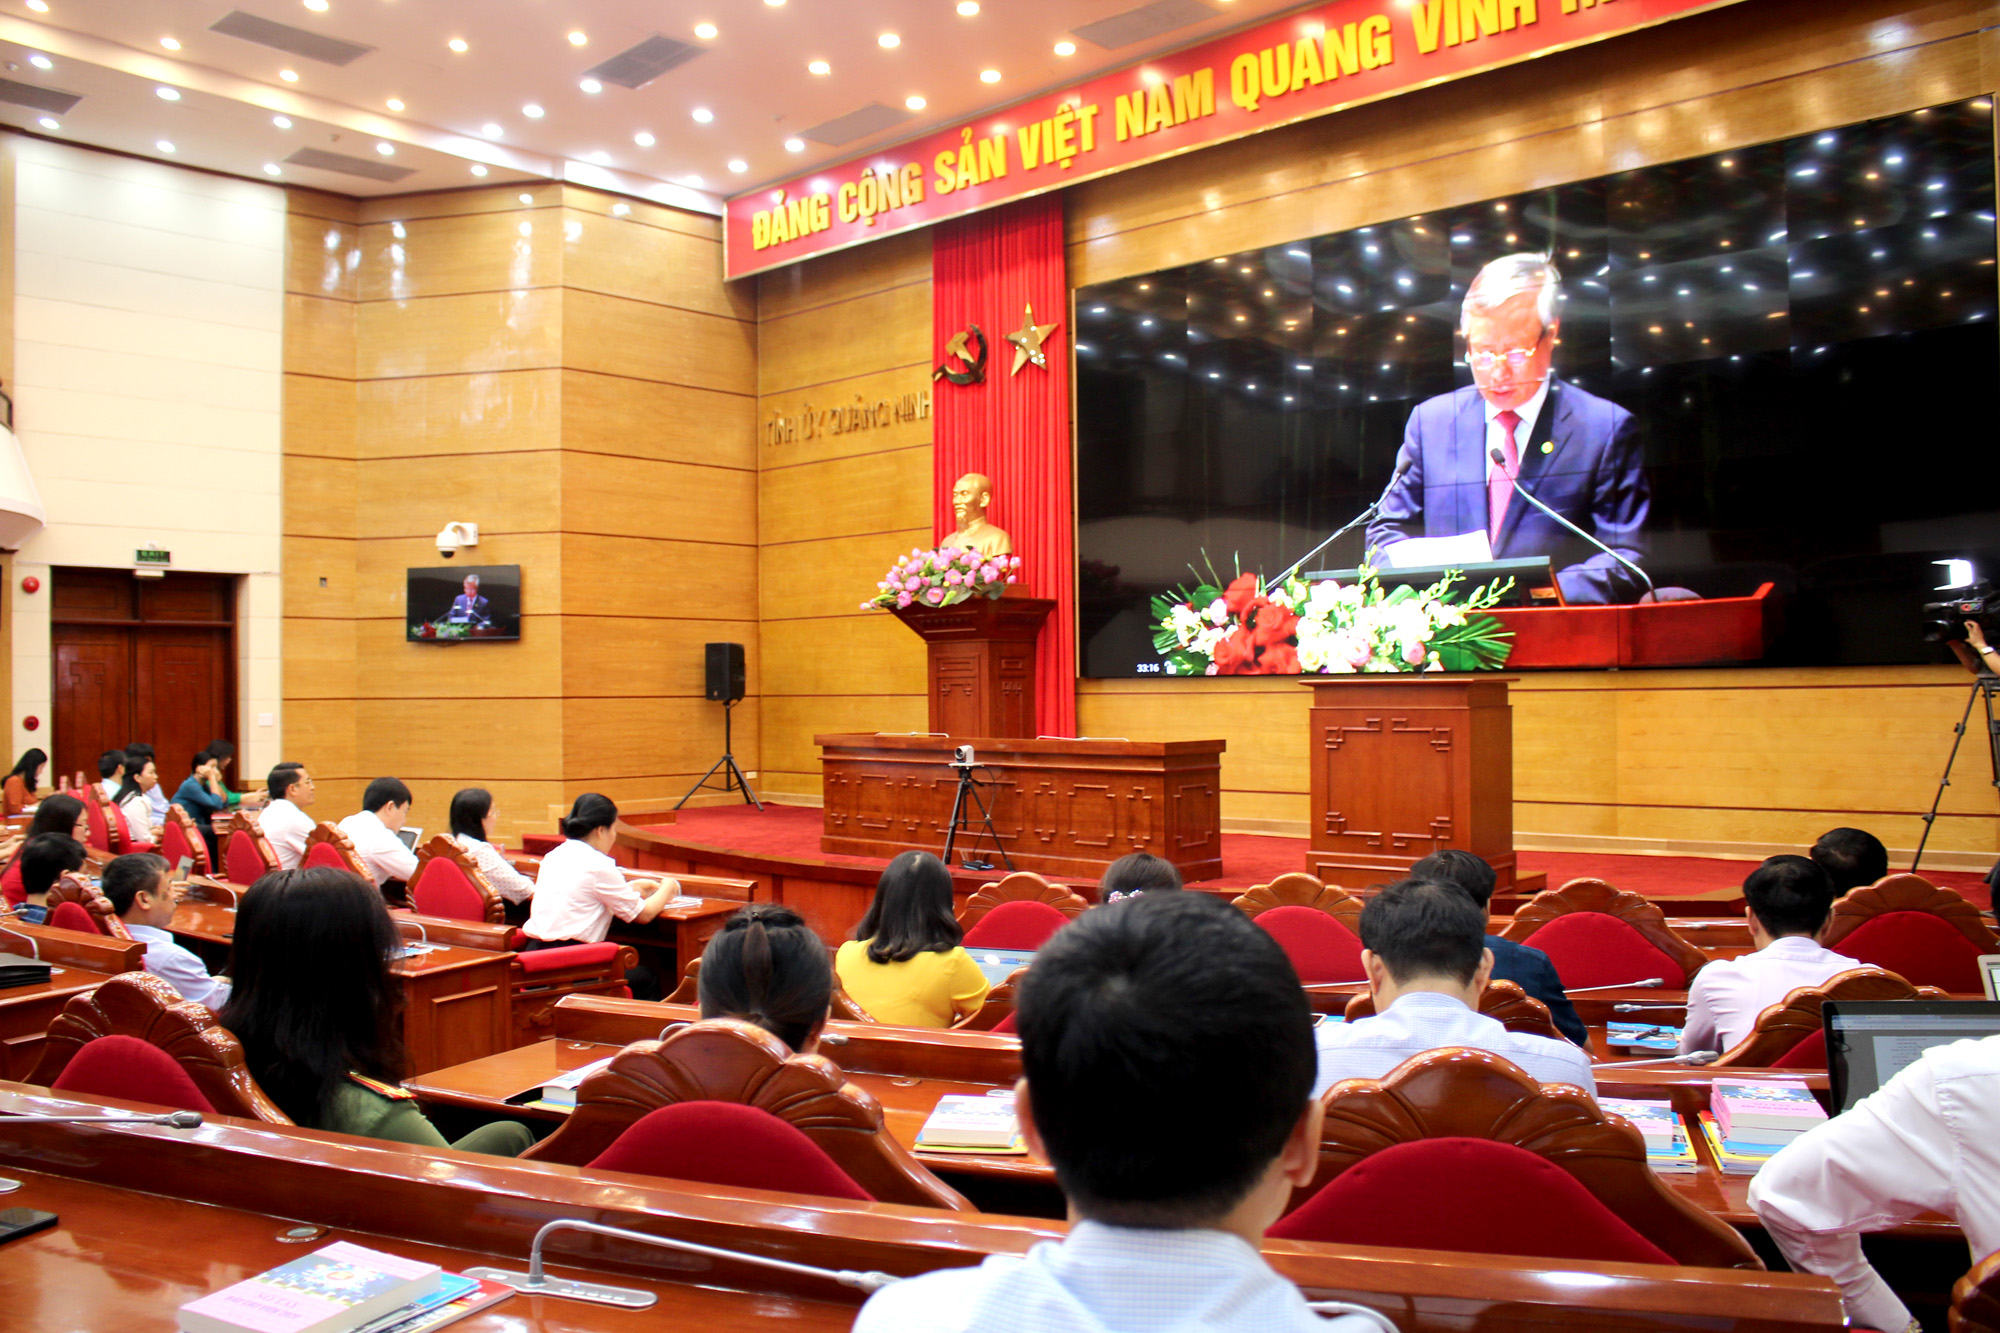 Hội thảo khoa học Chủ tịch Hồ Chí Minh với sự nghiệp đổi mới, phát triển và bảo vệ Tổ quốc